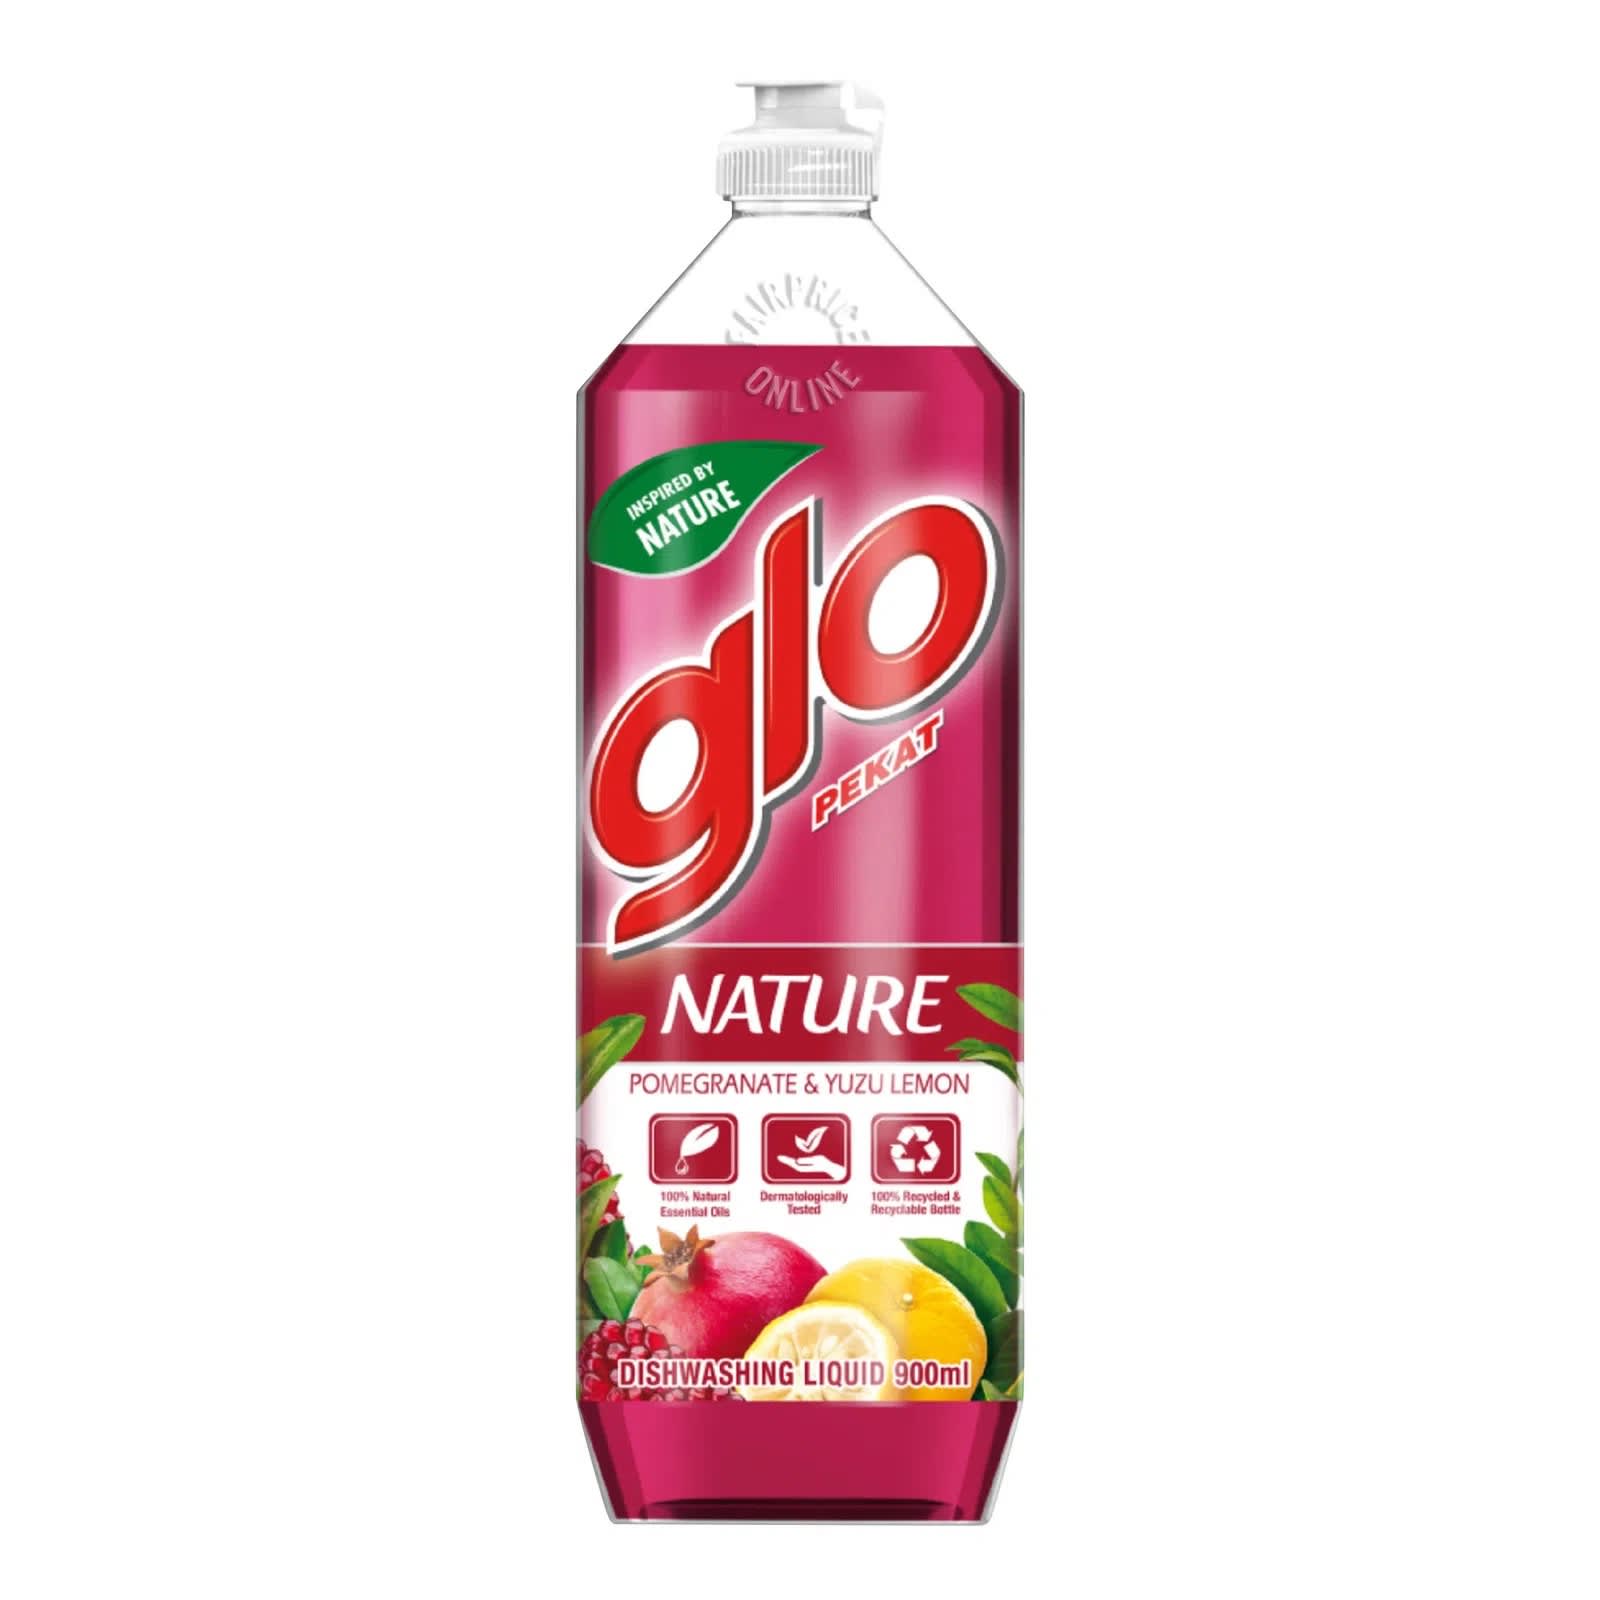 Glo Nature Dishwashing Liquid Pomegranate & Yuzu Lemon 900 ml